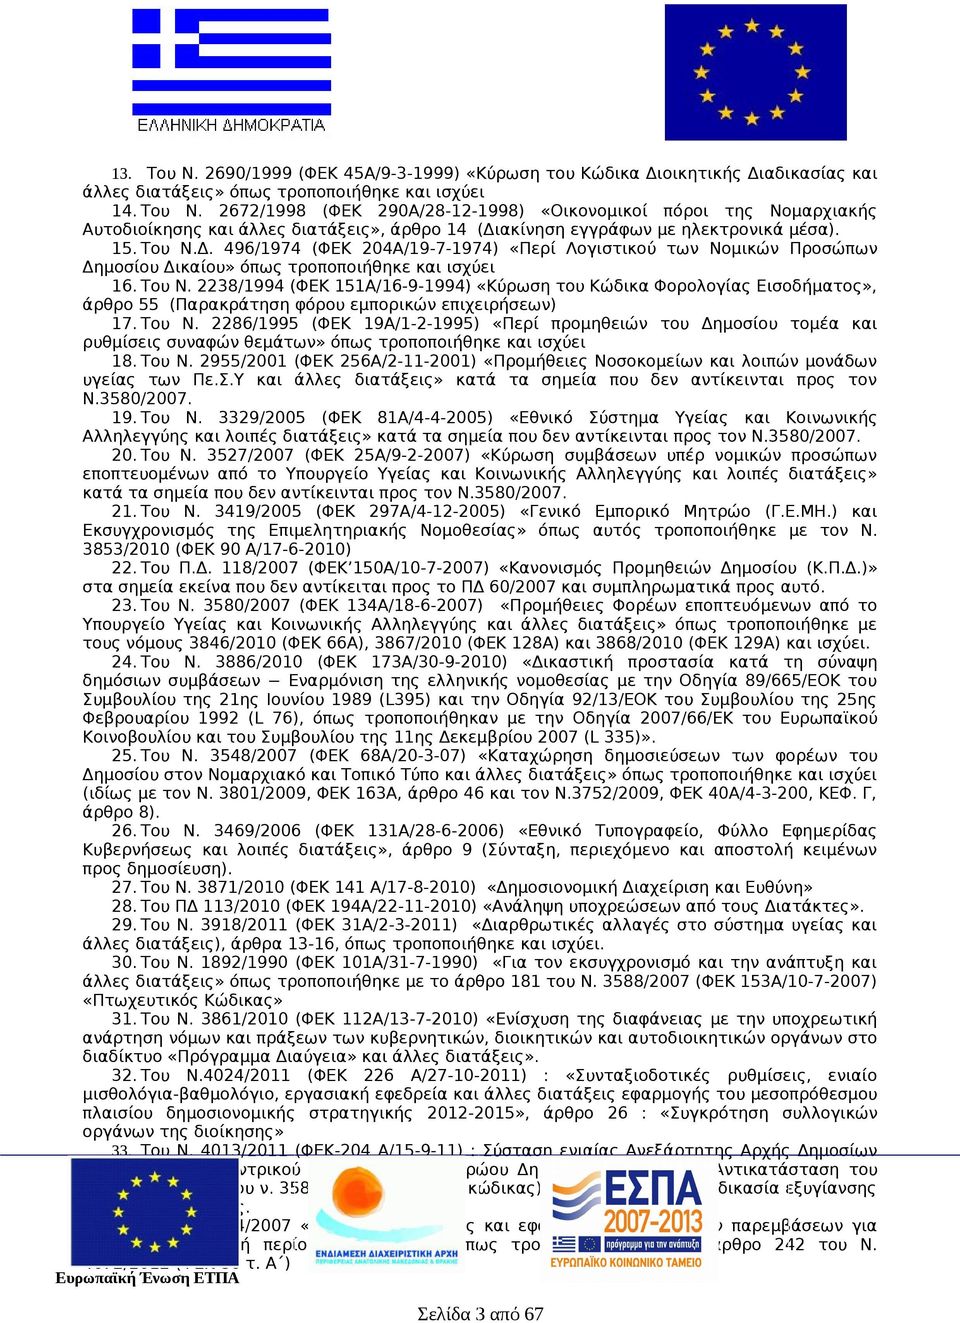 Του Ν. 2286/1995 (ΦΕΚ 19Α/1-2-1995) «Περί προμηθειών του Δημοσίου τομέα και ρυθμίσεις συναφών θεμάτων» όπως τροποποιήθηκε και ισχύει 18. Του Ν.